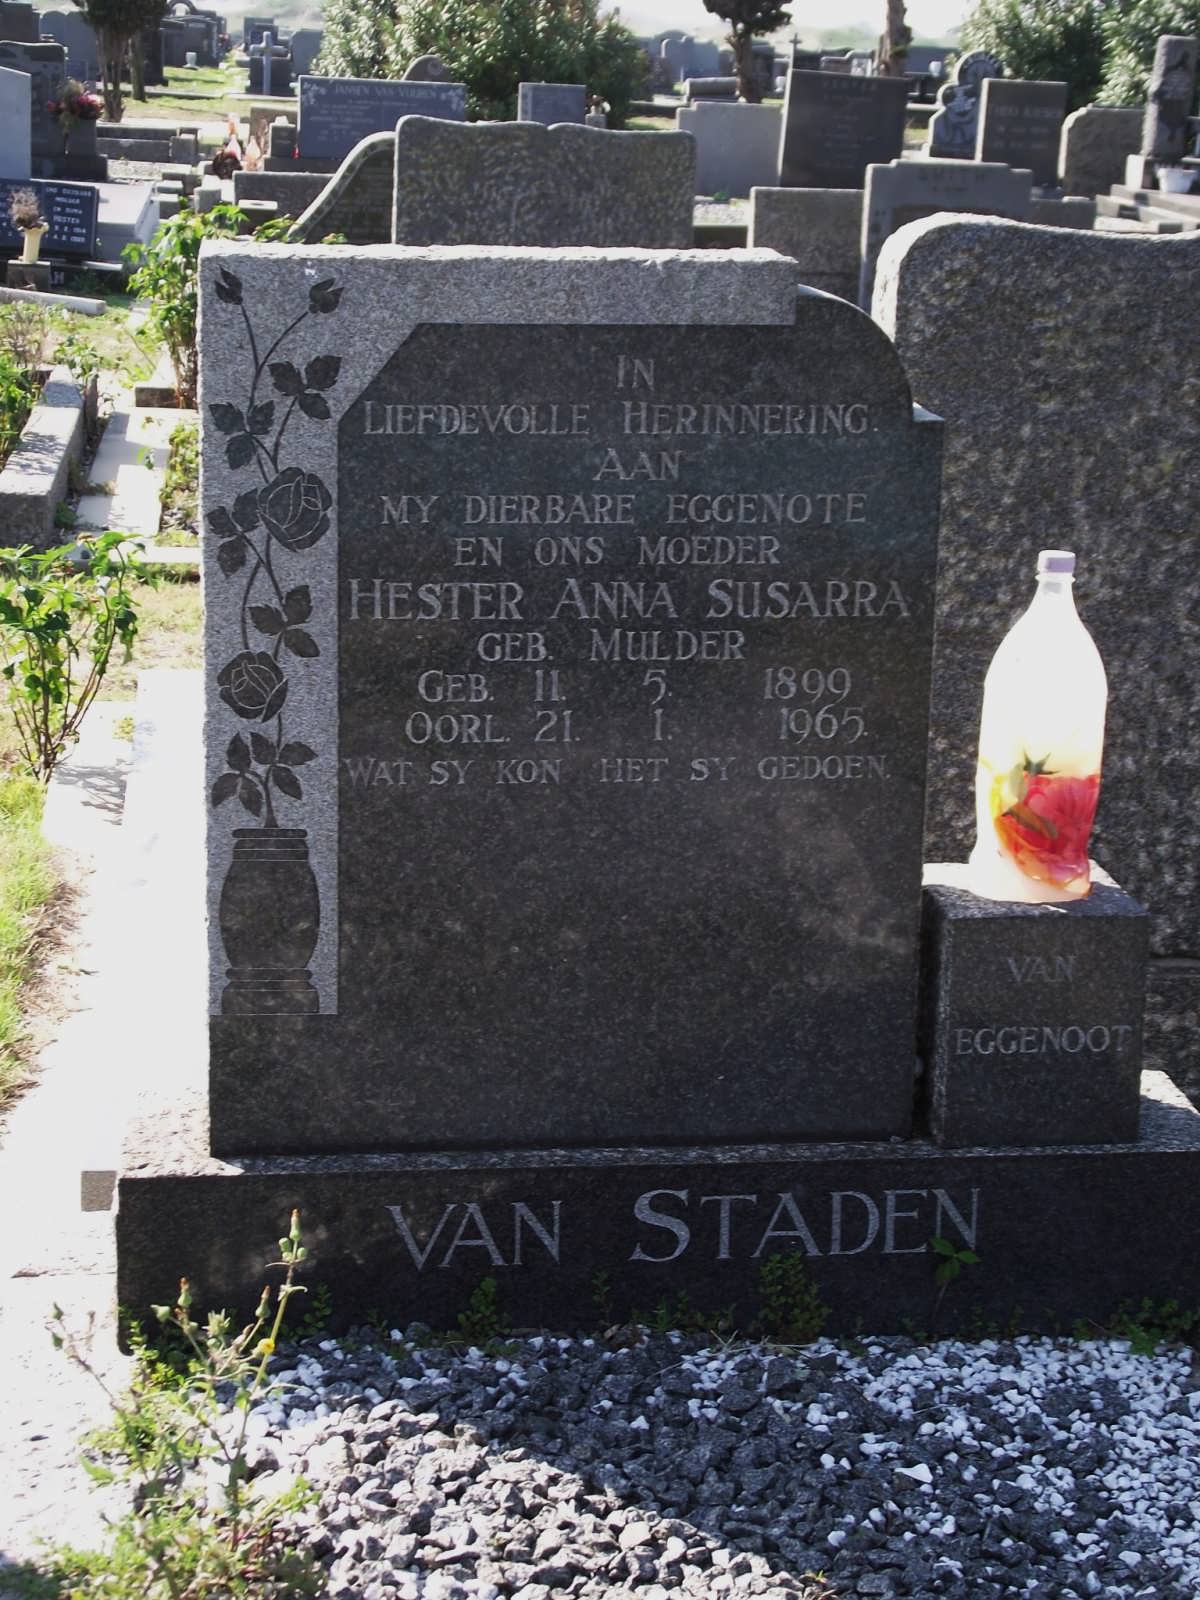 STADEN Hester Anna Susarra, van nee MULDER 1899-1965